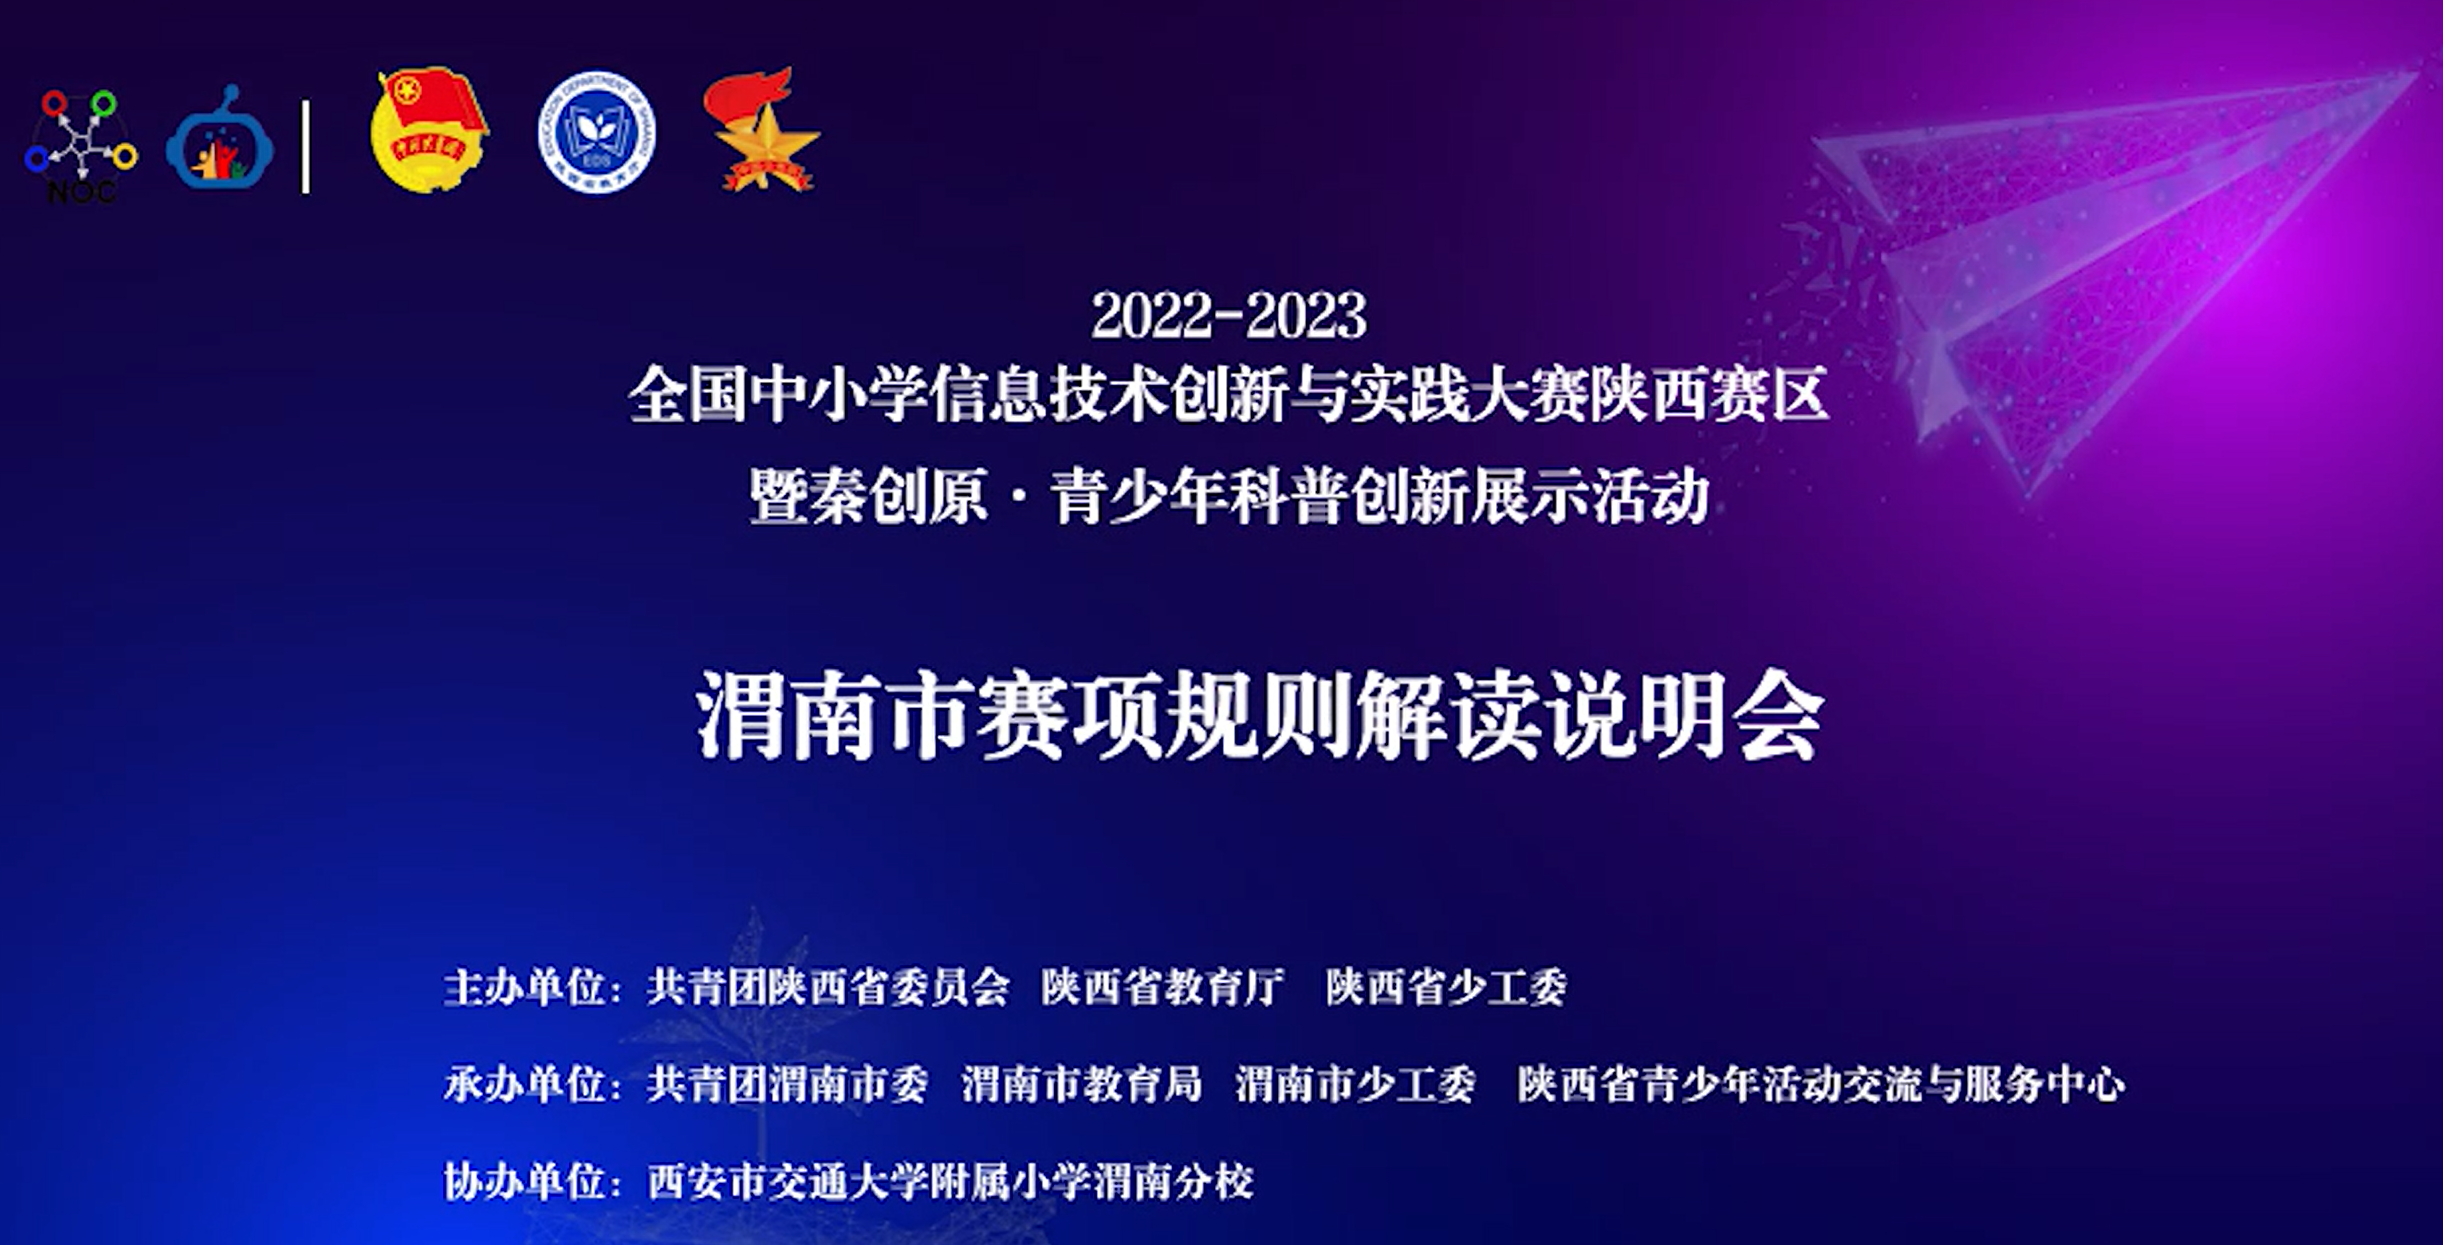 2022-2023年全国中小学信息技术创新与实践大赛陕西赛区渭南市赛项规则解读说明会